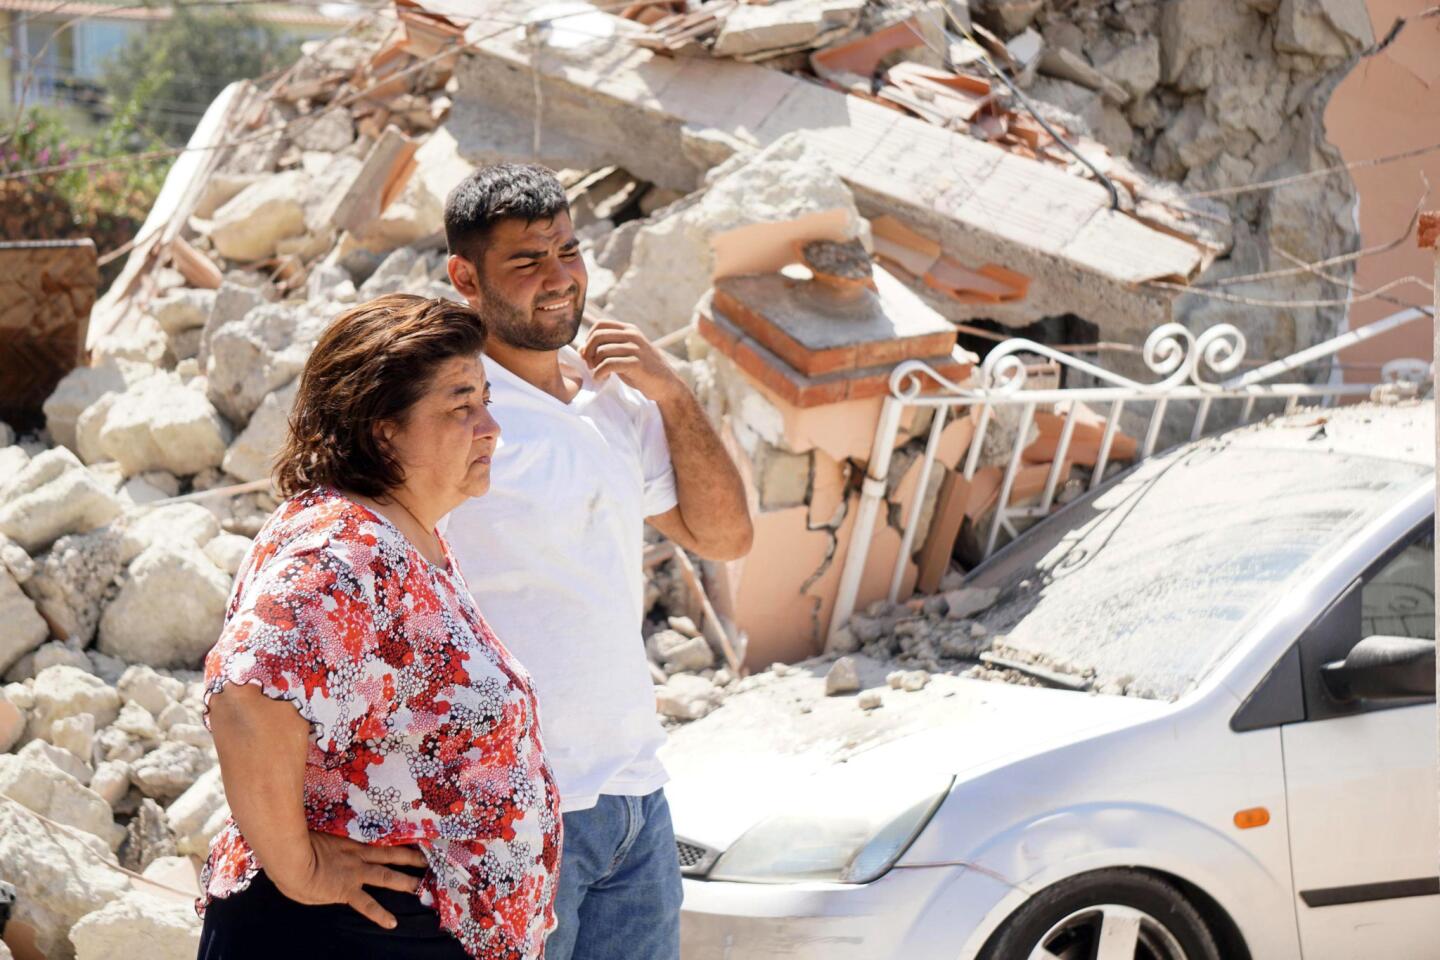 4.0 quake hits an Italian island